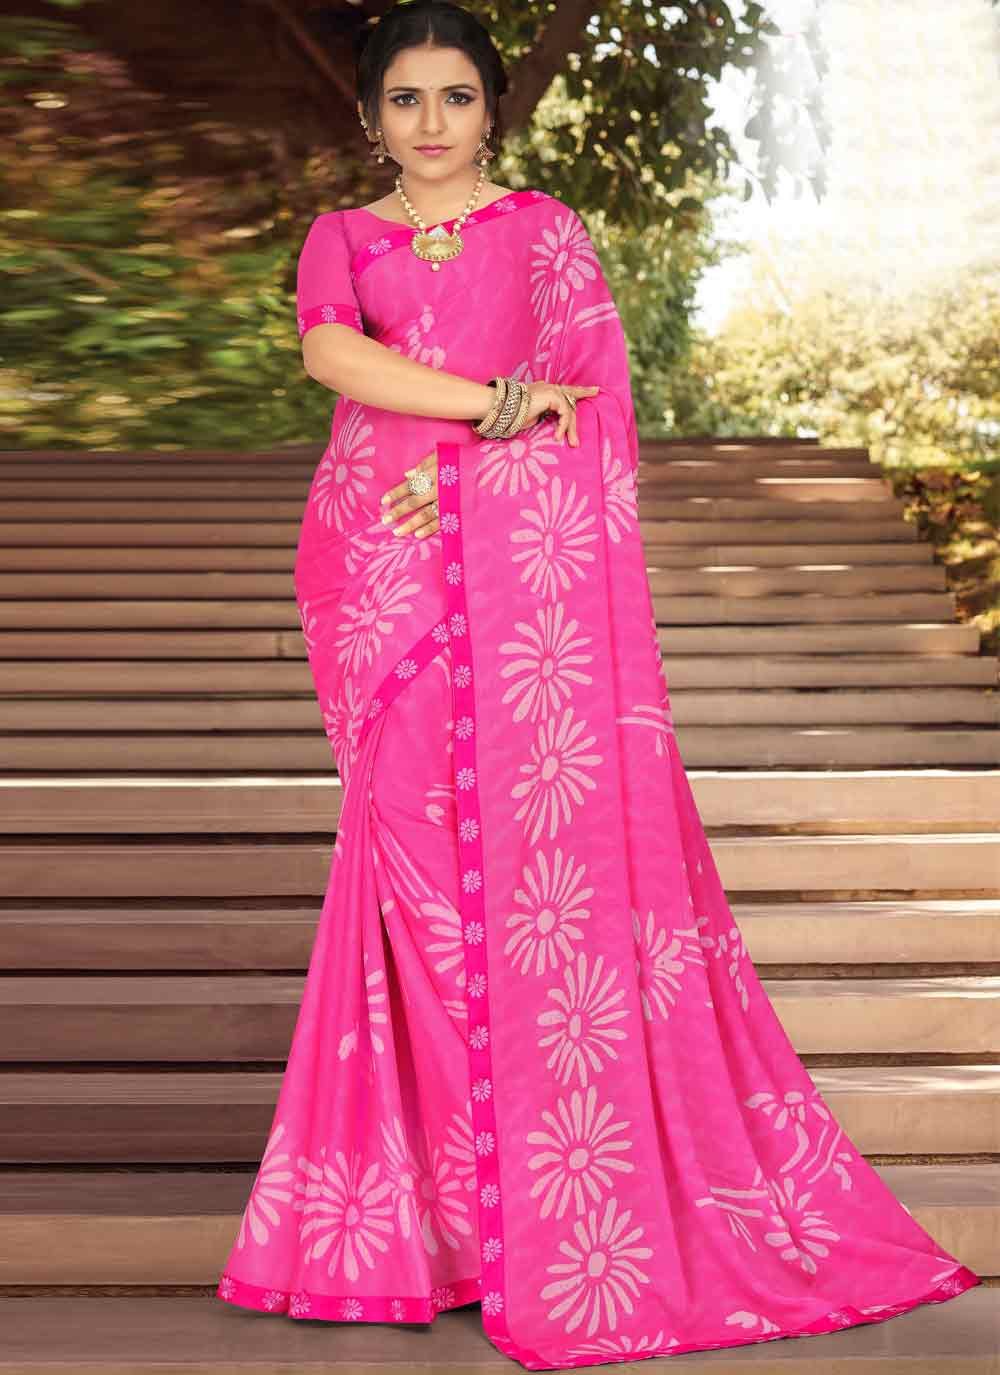 Hot Pink Classic Designer Saree